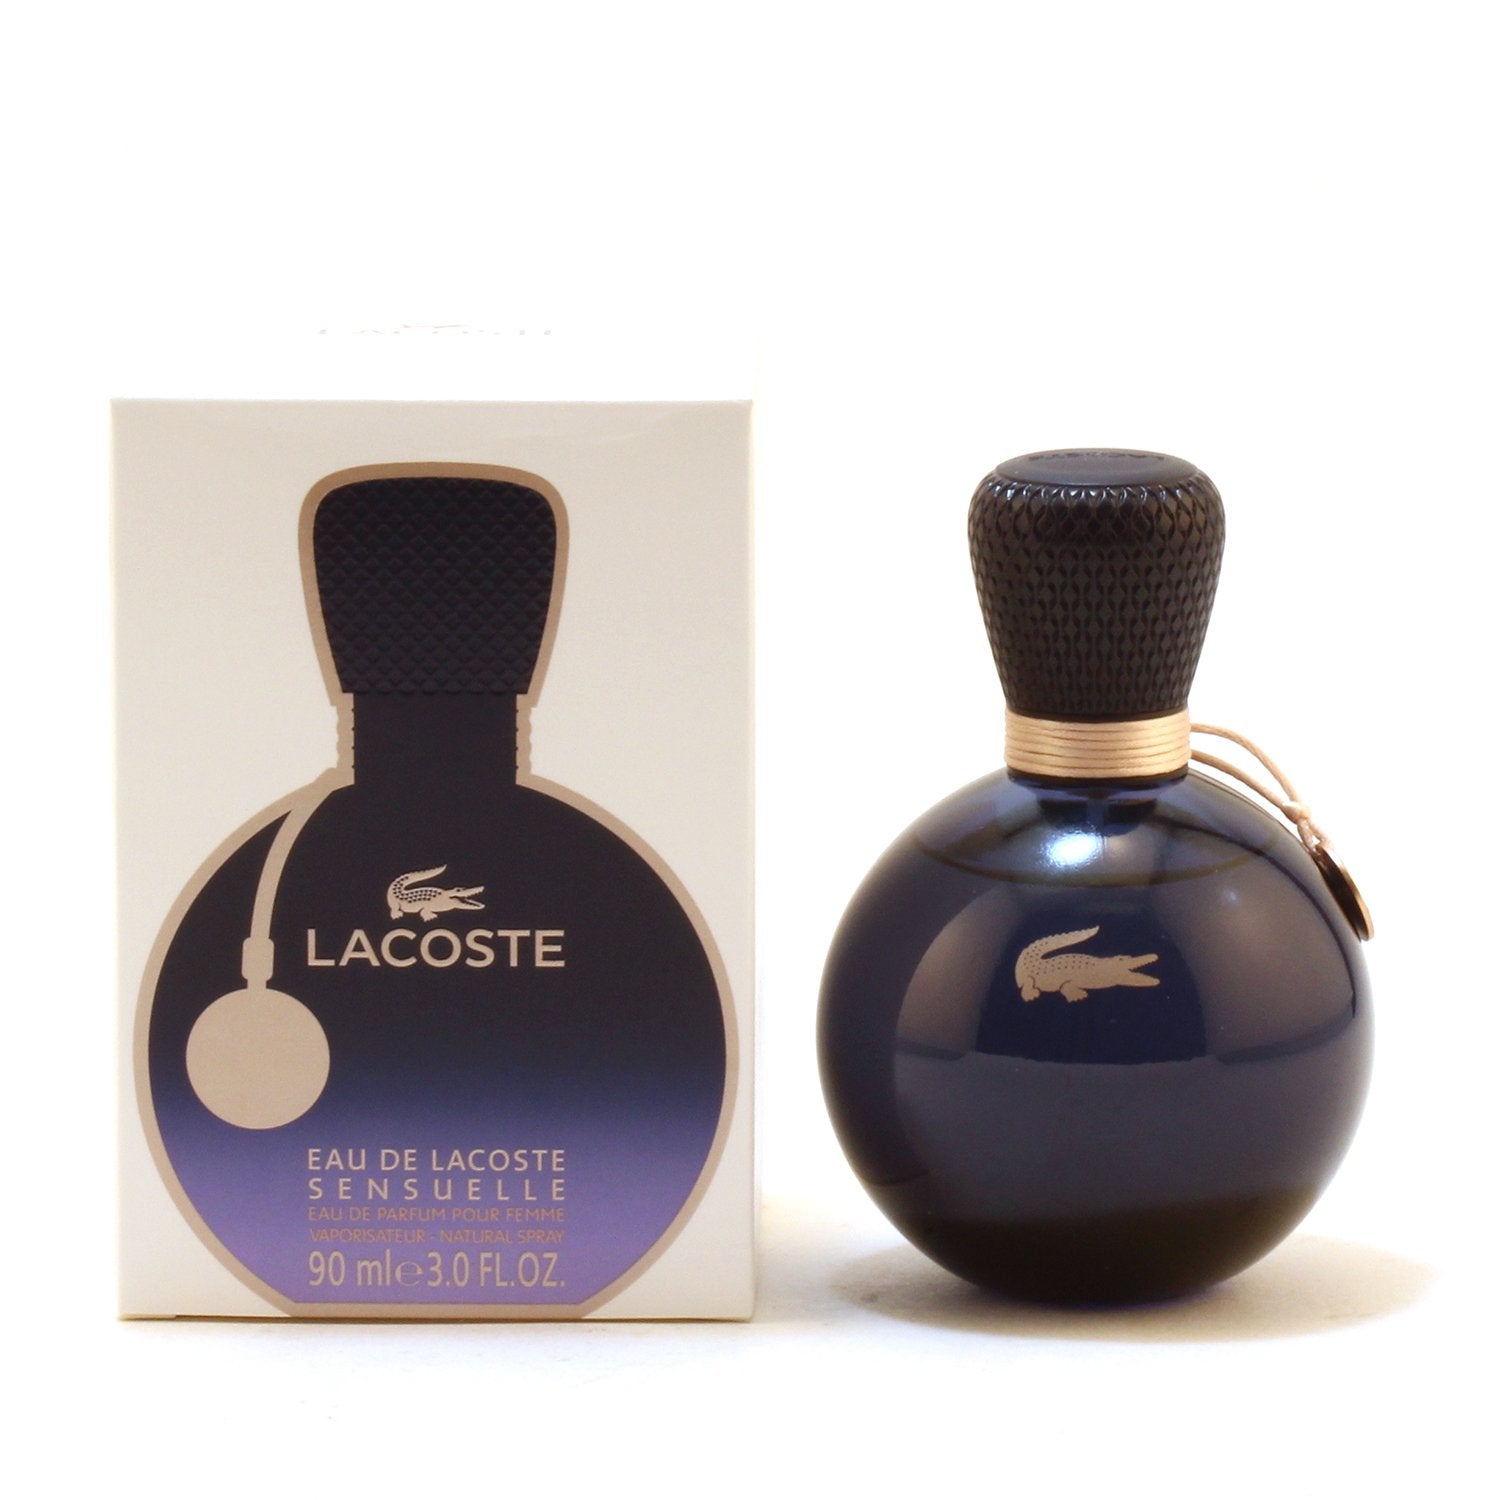 LACOSTE EAU DE LACOSTE FOR WOMEN - EAU DE PARFUM 3.0 – Fragrance